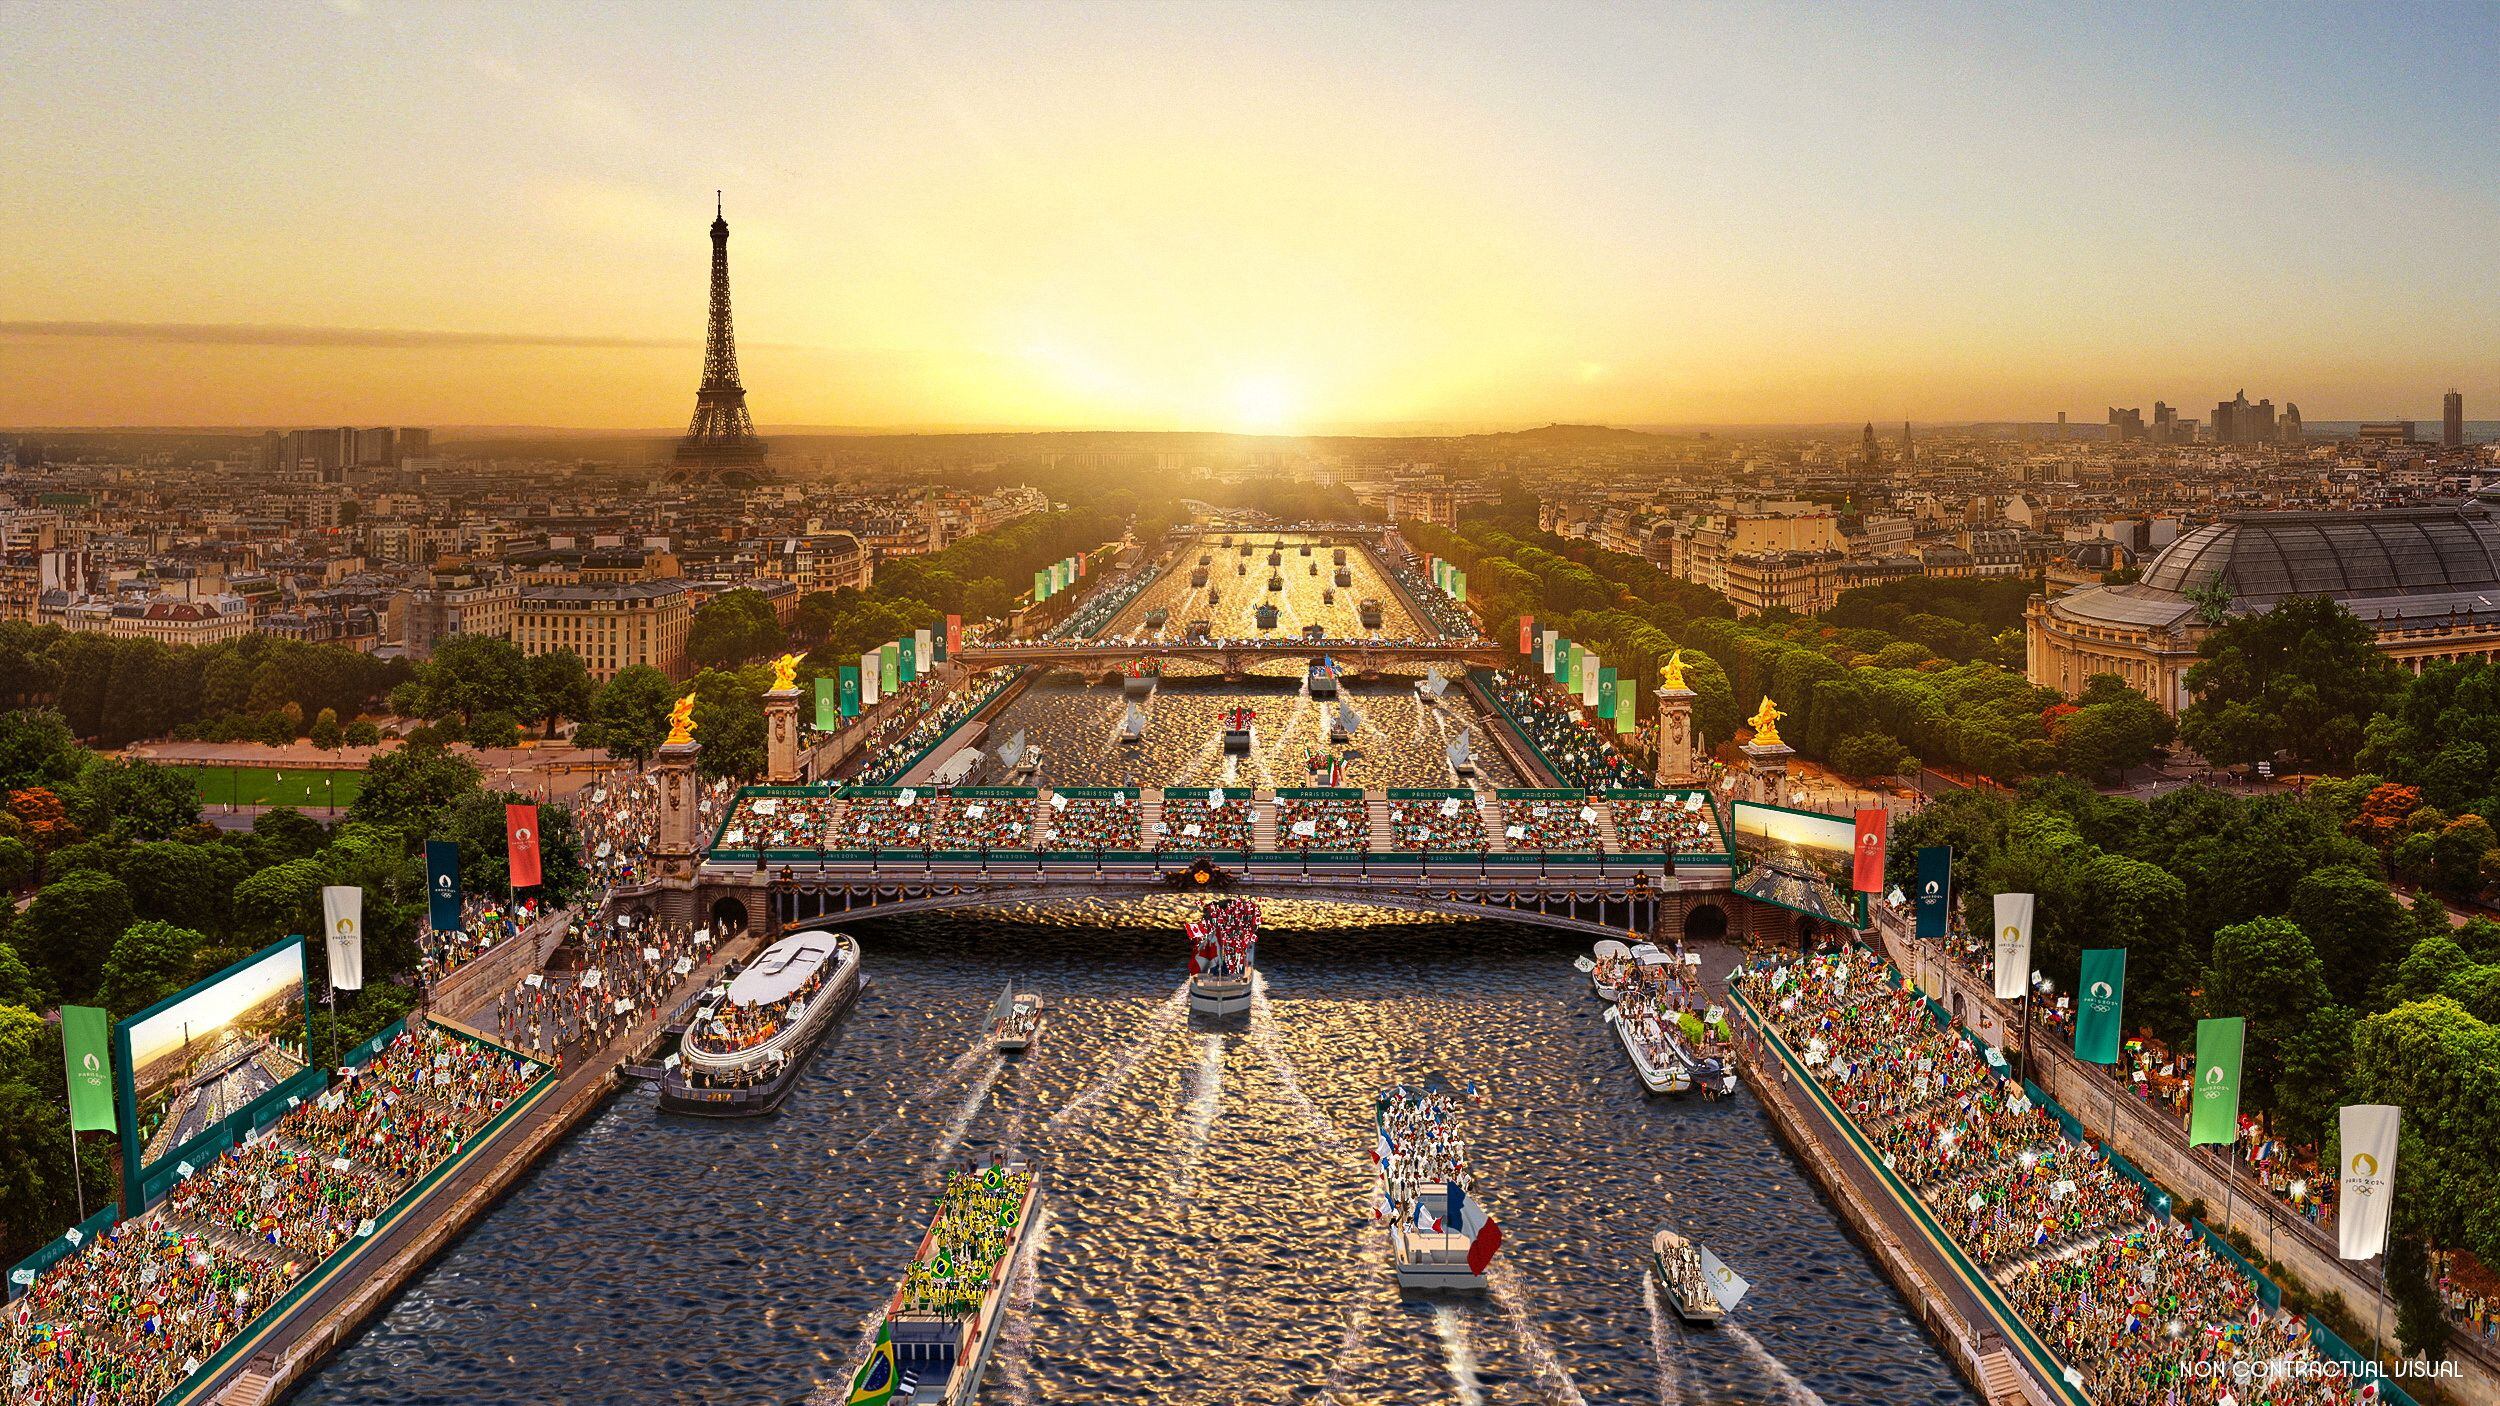 Una recreación de lo que será la apertura de los Juegos Olímpicos de París 2024 